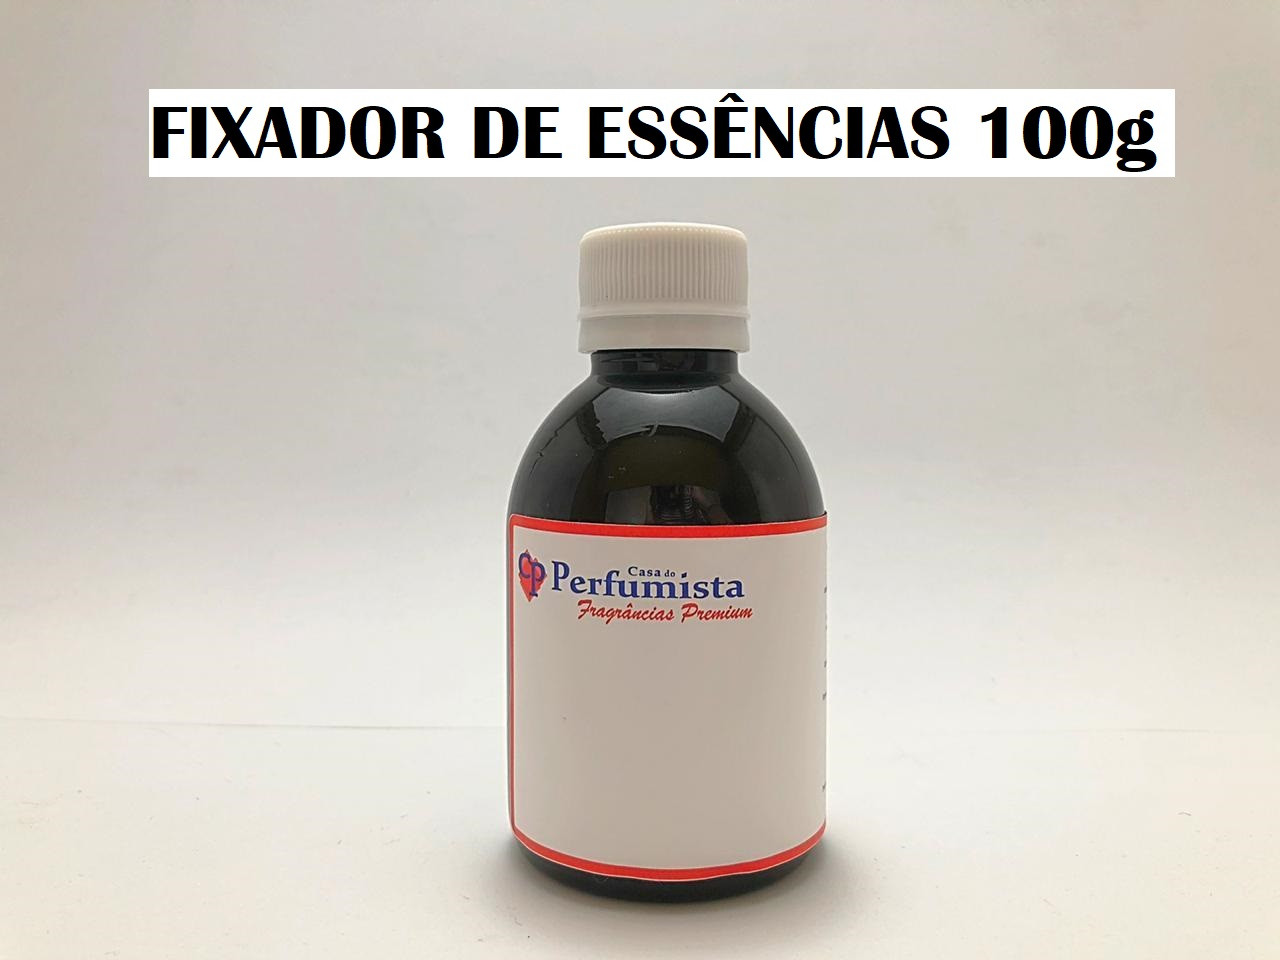 FIXADOR DE ESSÊNCIAS - 100g